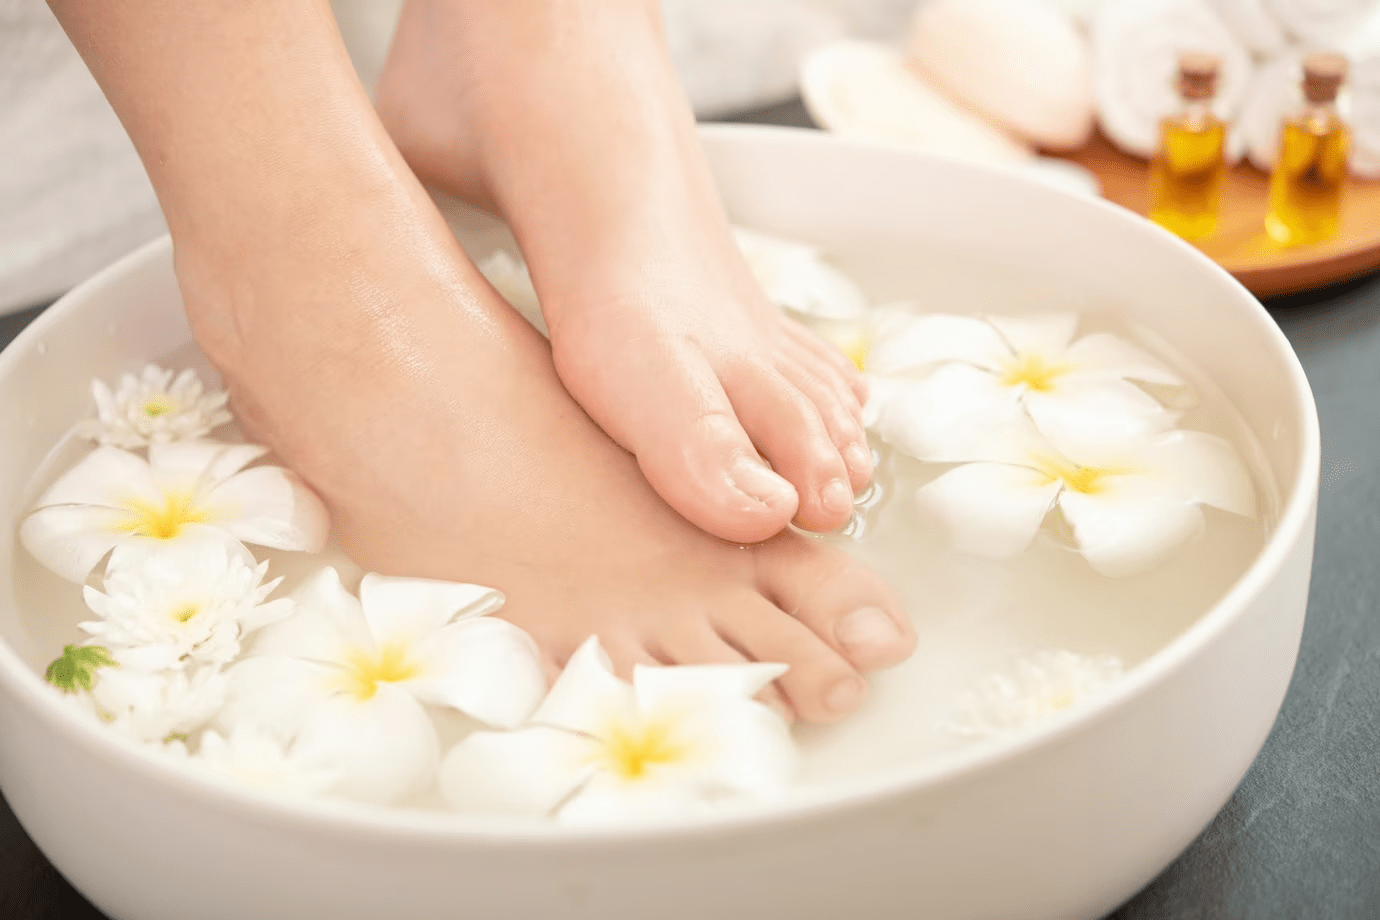 Teplá a výživná koupel nohou dodá velkou dávku zdraví celému tělu